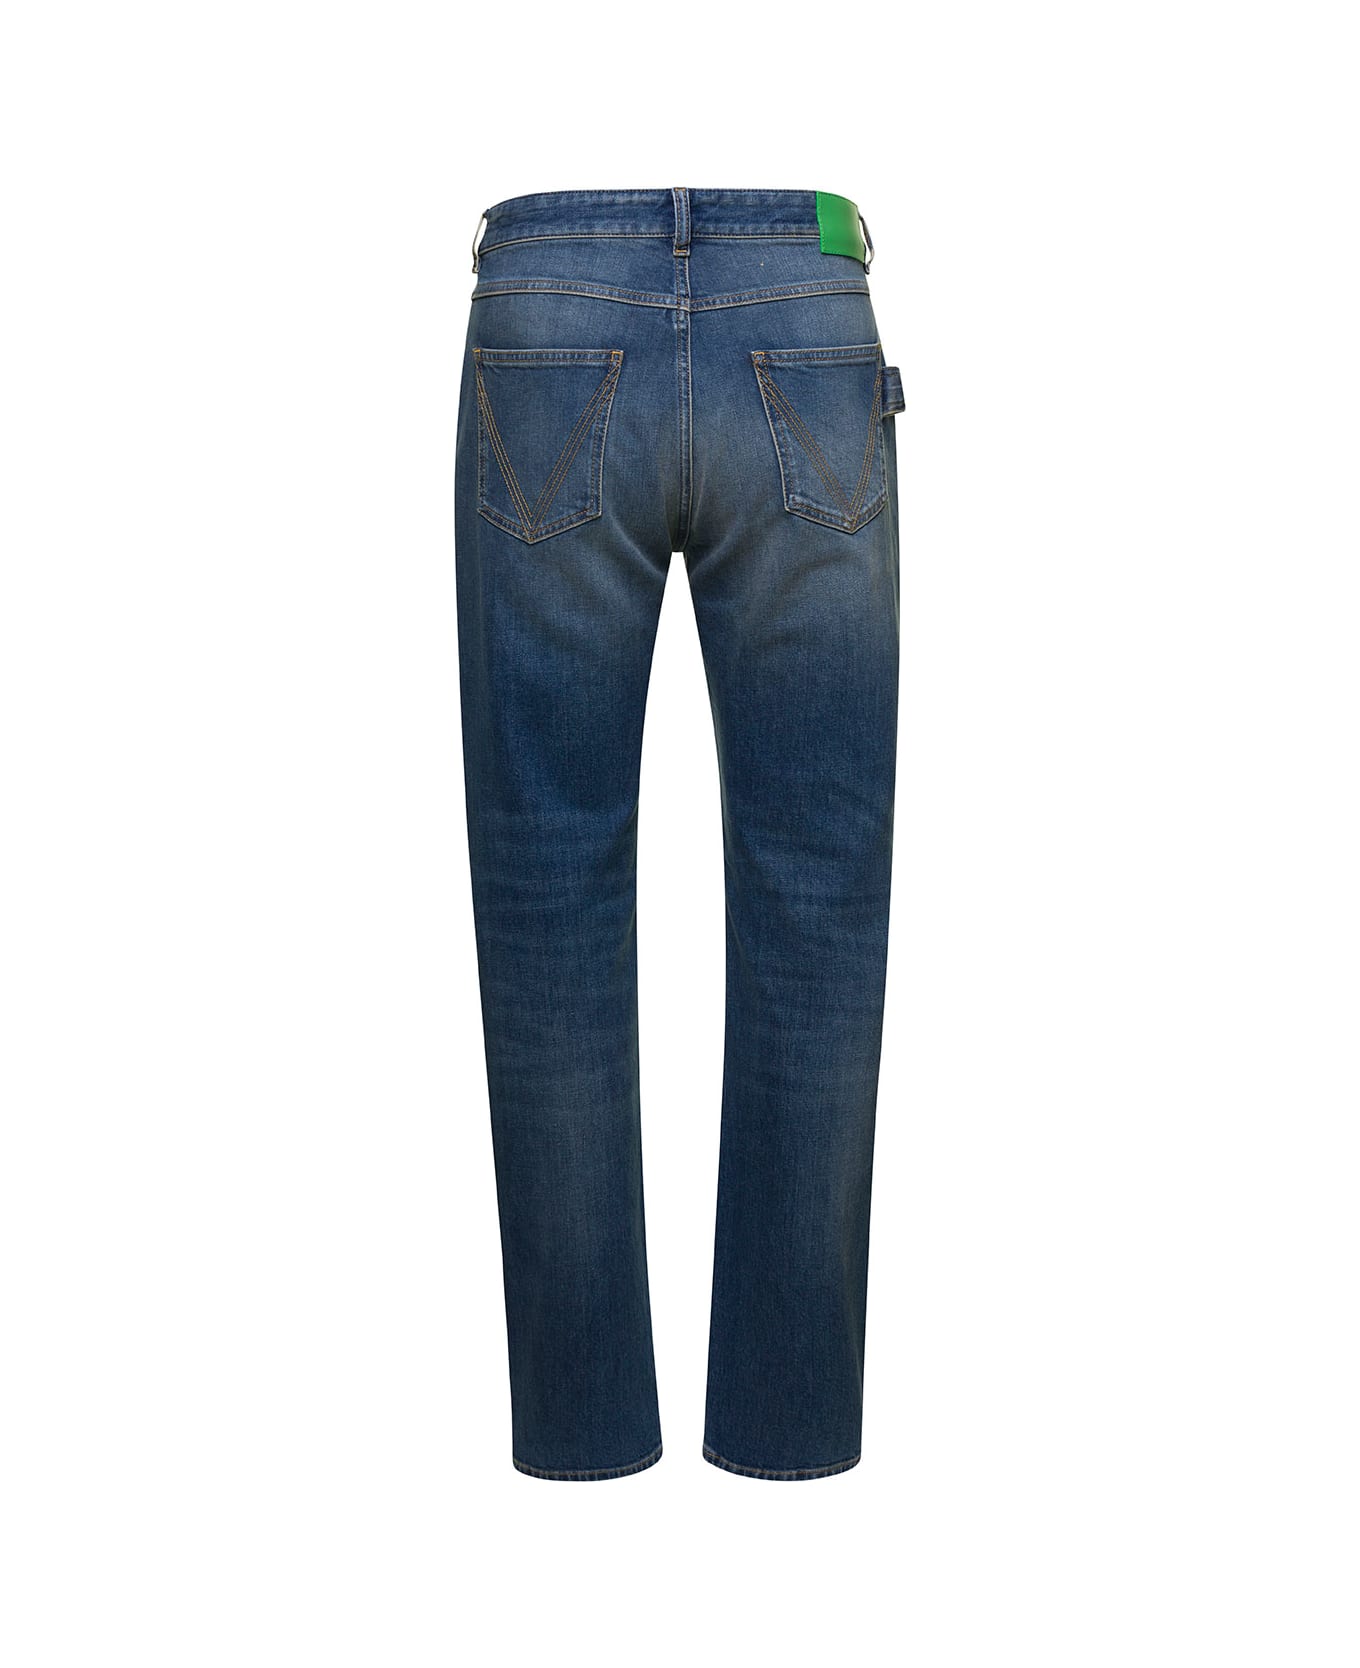 Bottega Veneta 5-pocket Style Fitted Jeans - Mid blue